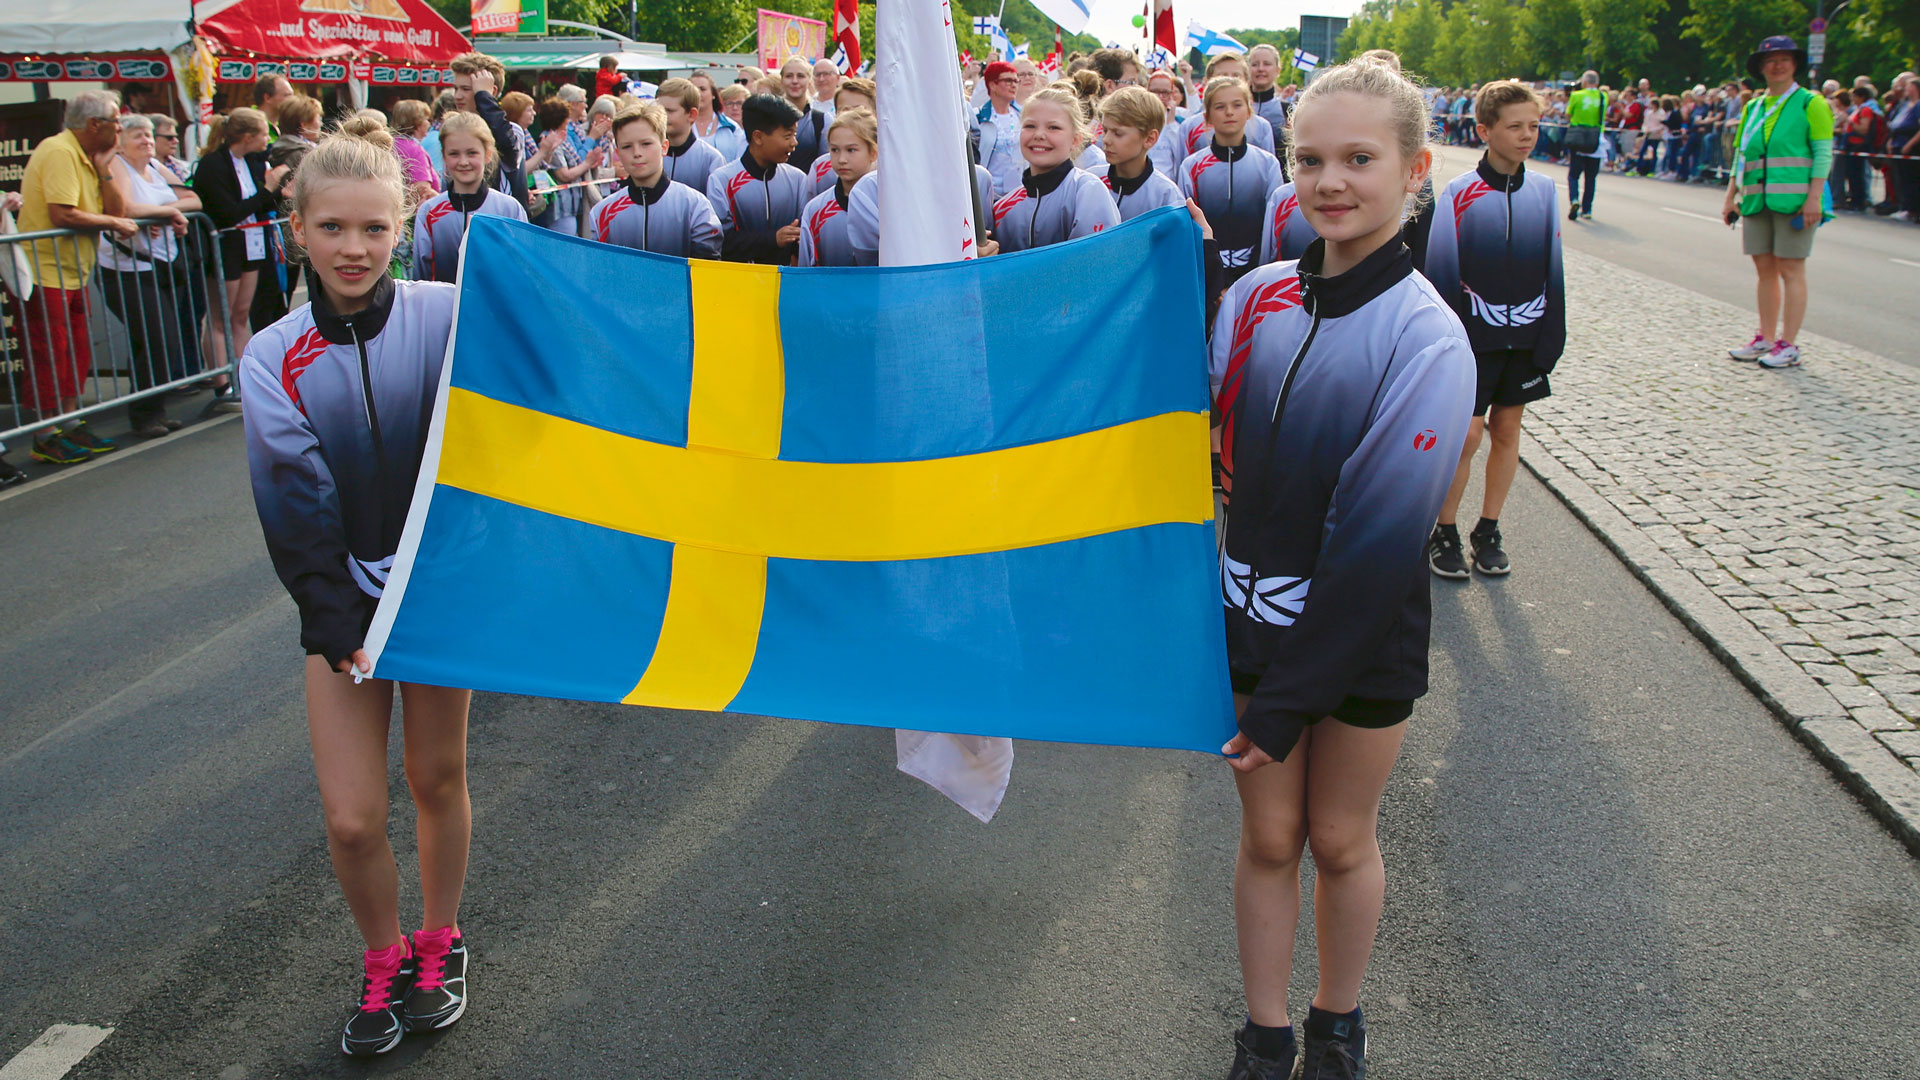 Schwedische Gruppe beim Festumzug | Bildquelle: Turnfestfotos